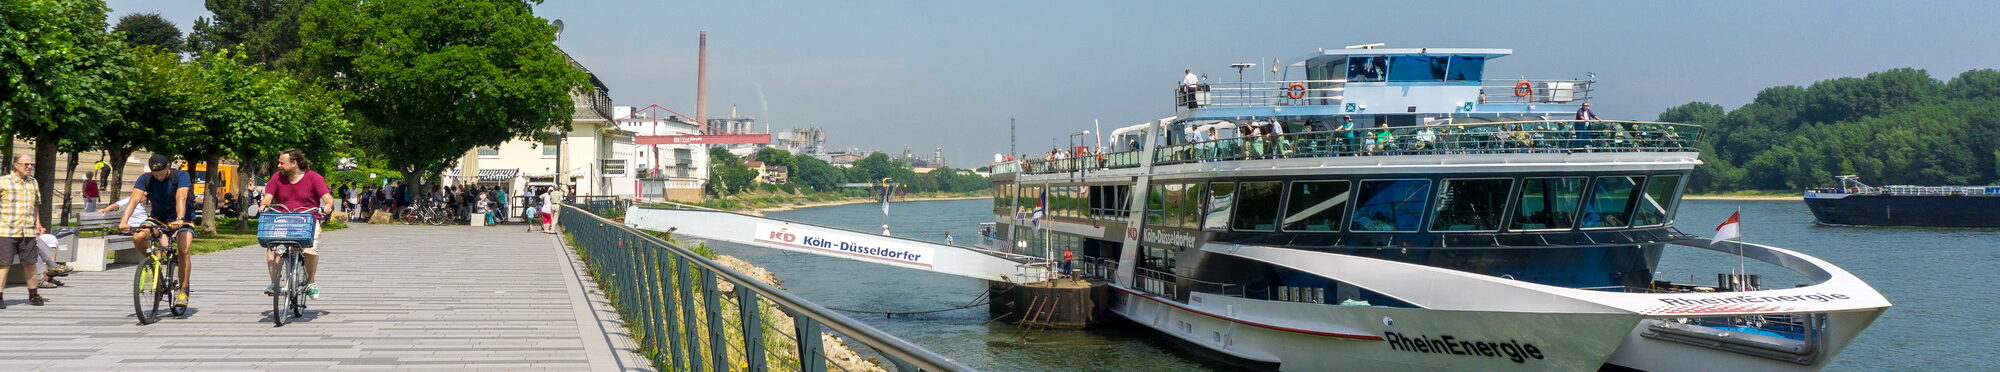 Rheinpromenade mit KD-Anleger